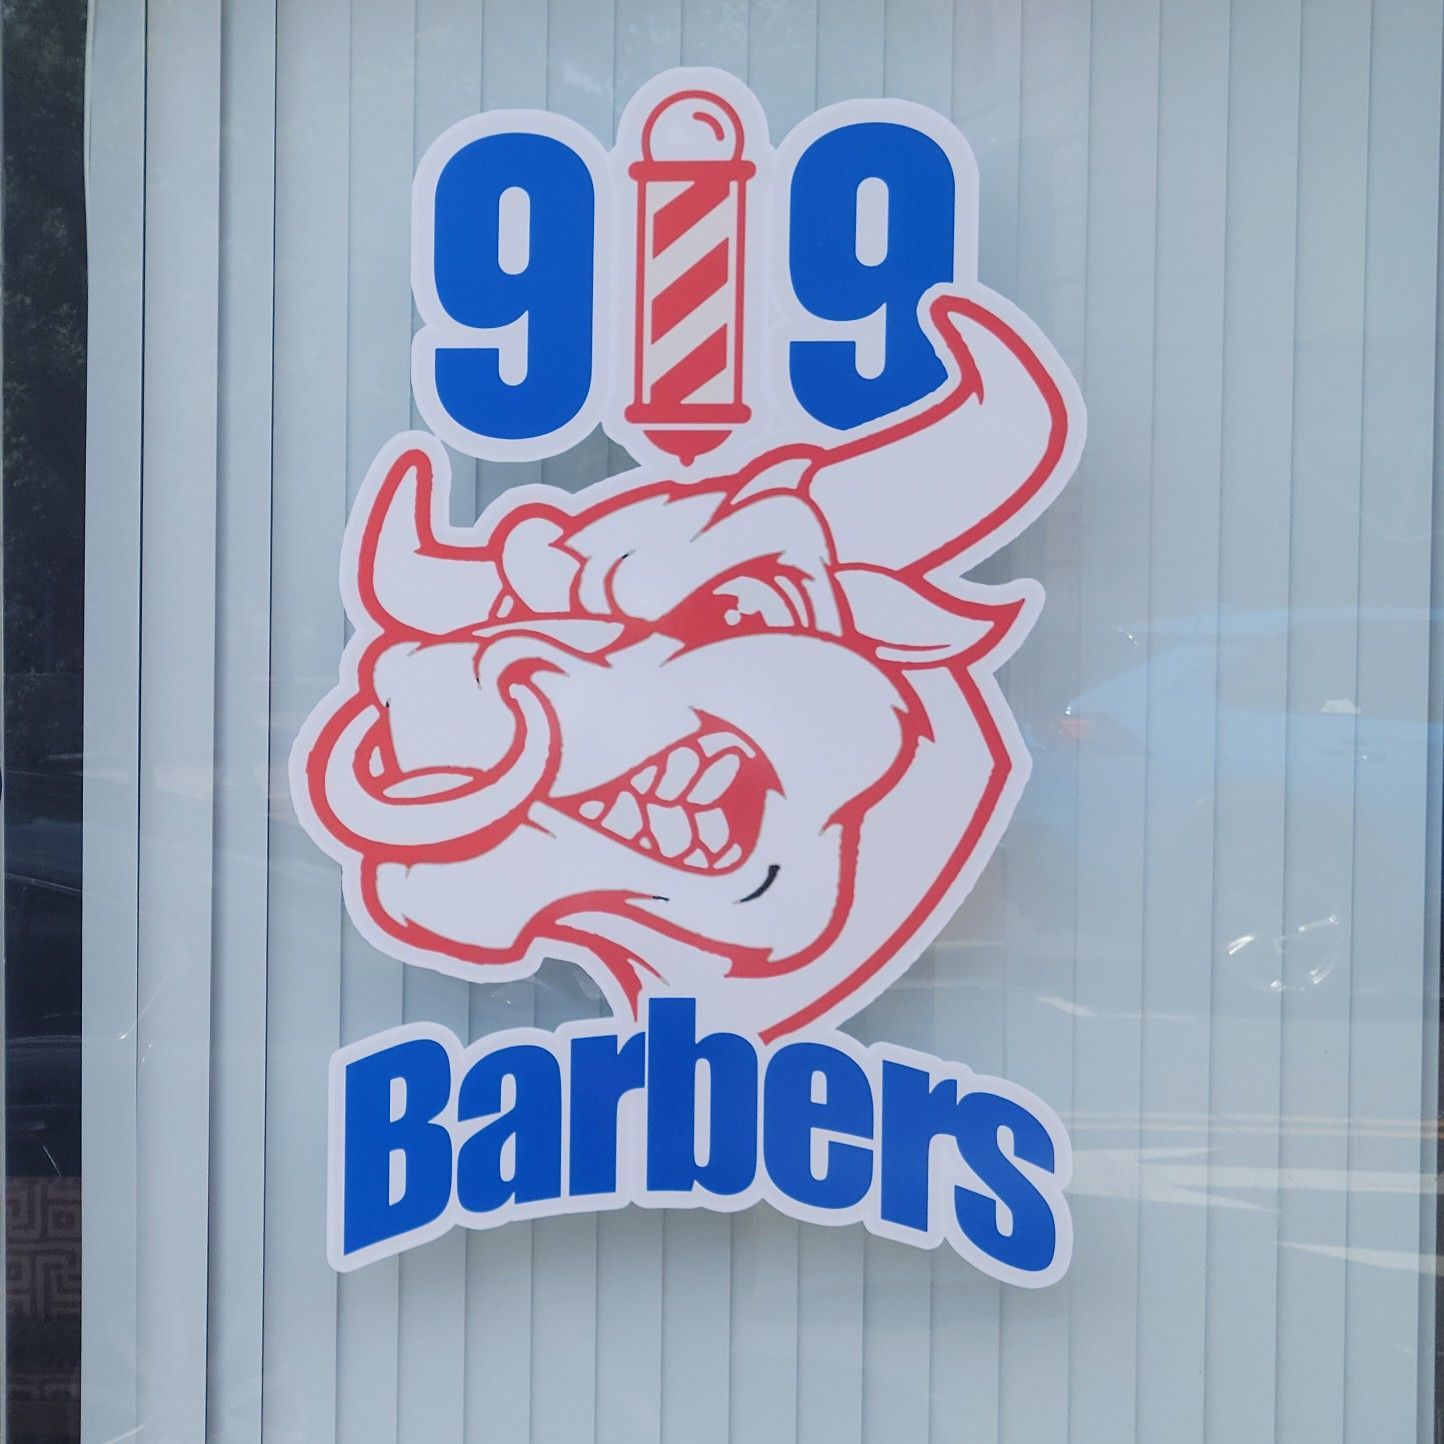 919 Barbers, 105 W Parrish St, Durham, 27701